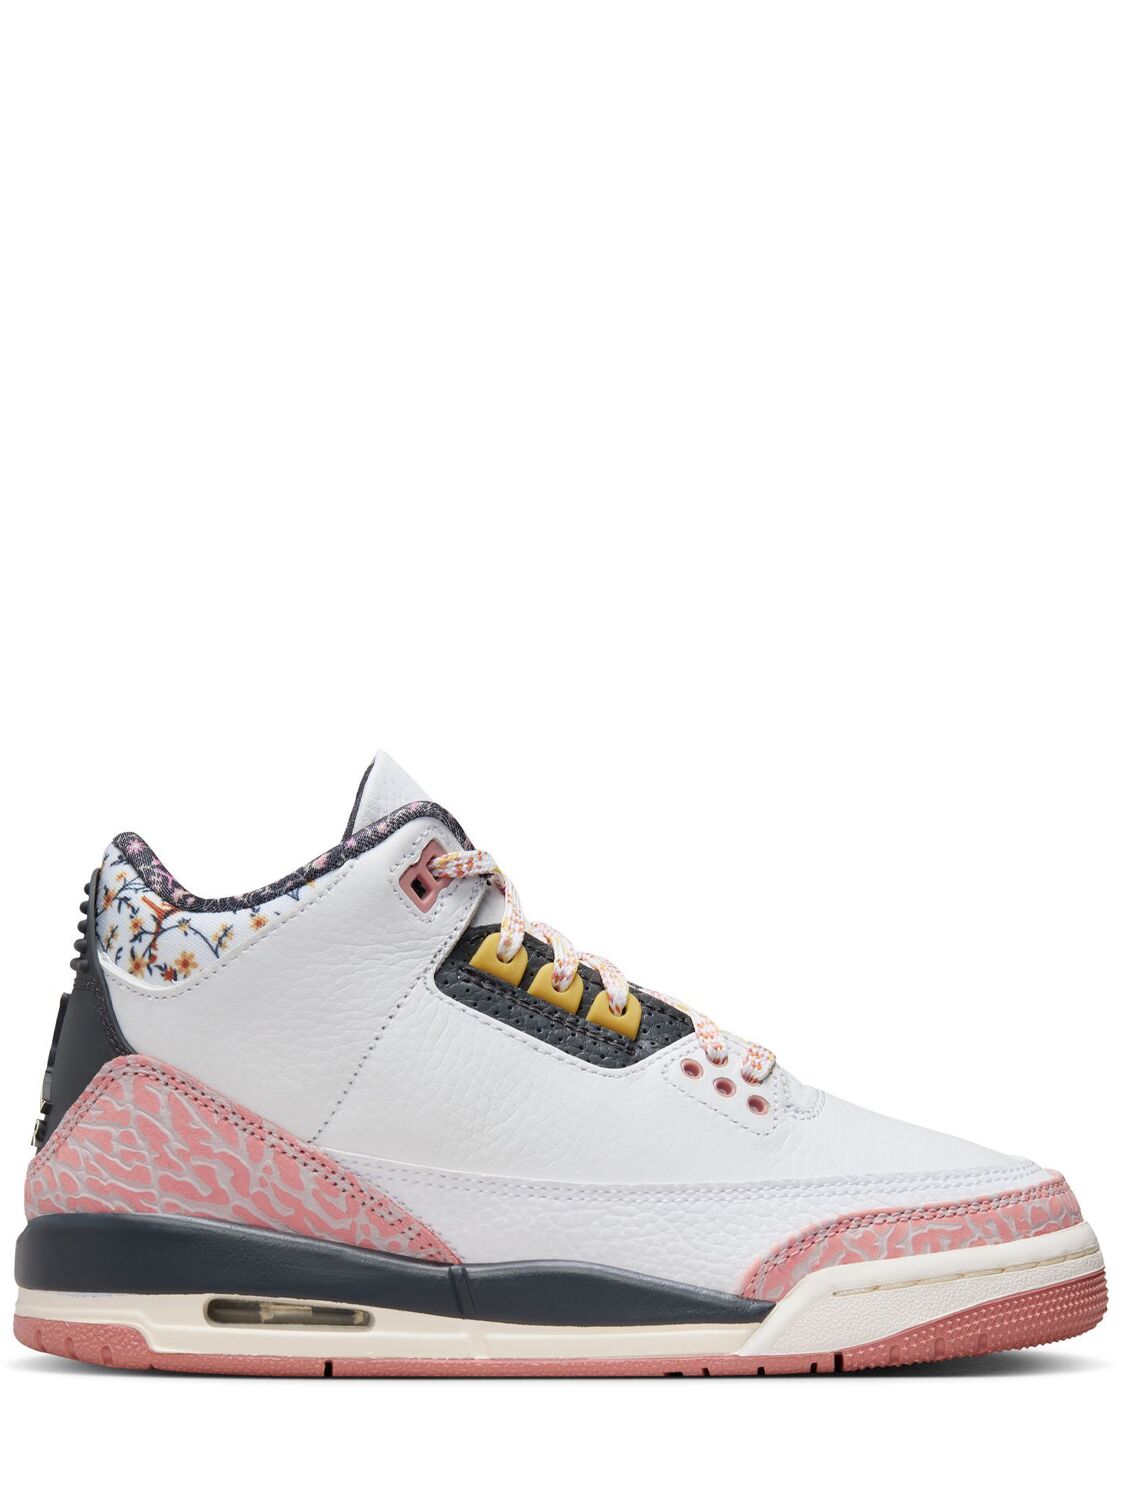 Image of Air Jordan 3 Retro Sneakers